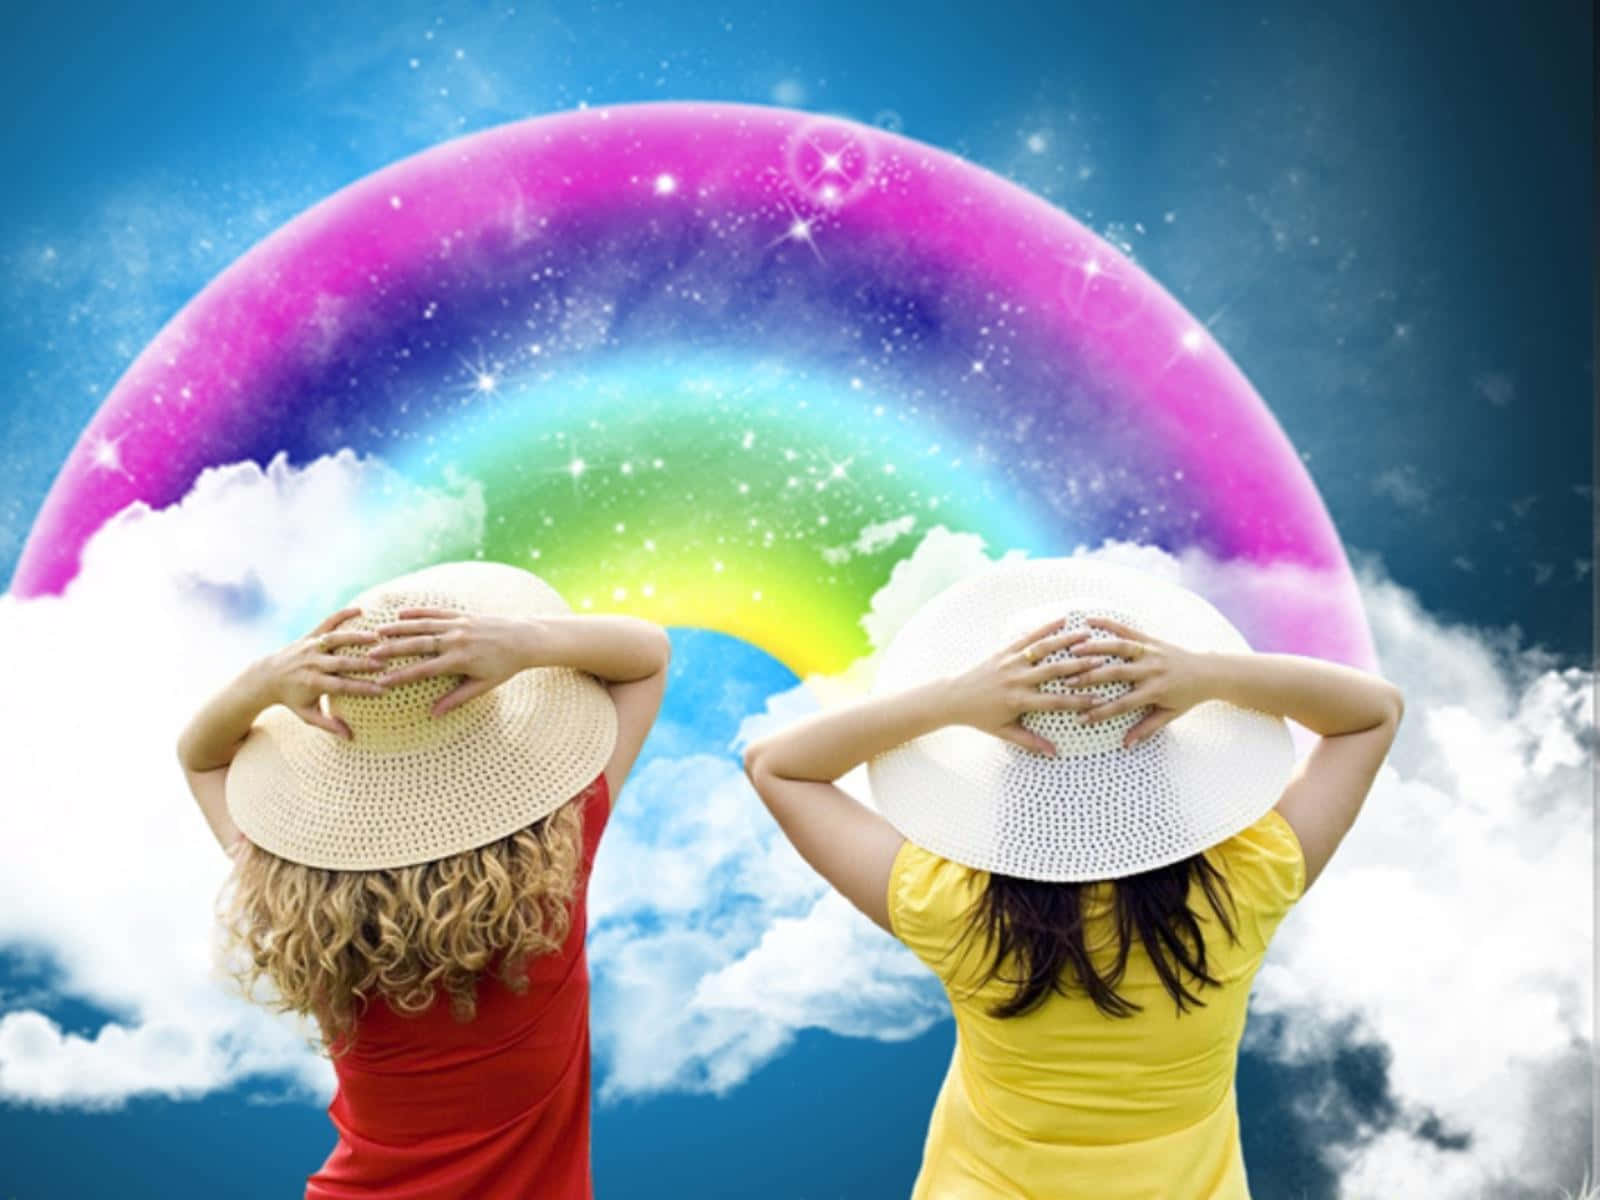 Zweifrauen Betrachten Einen Regenbogen.